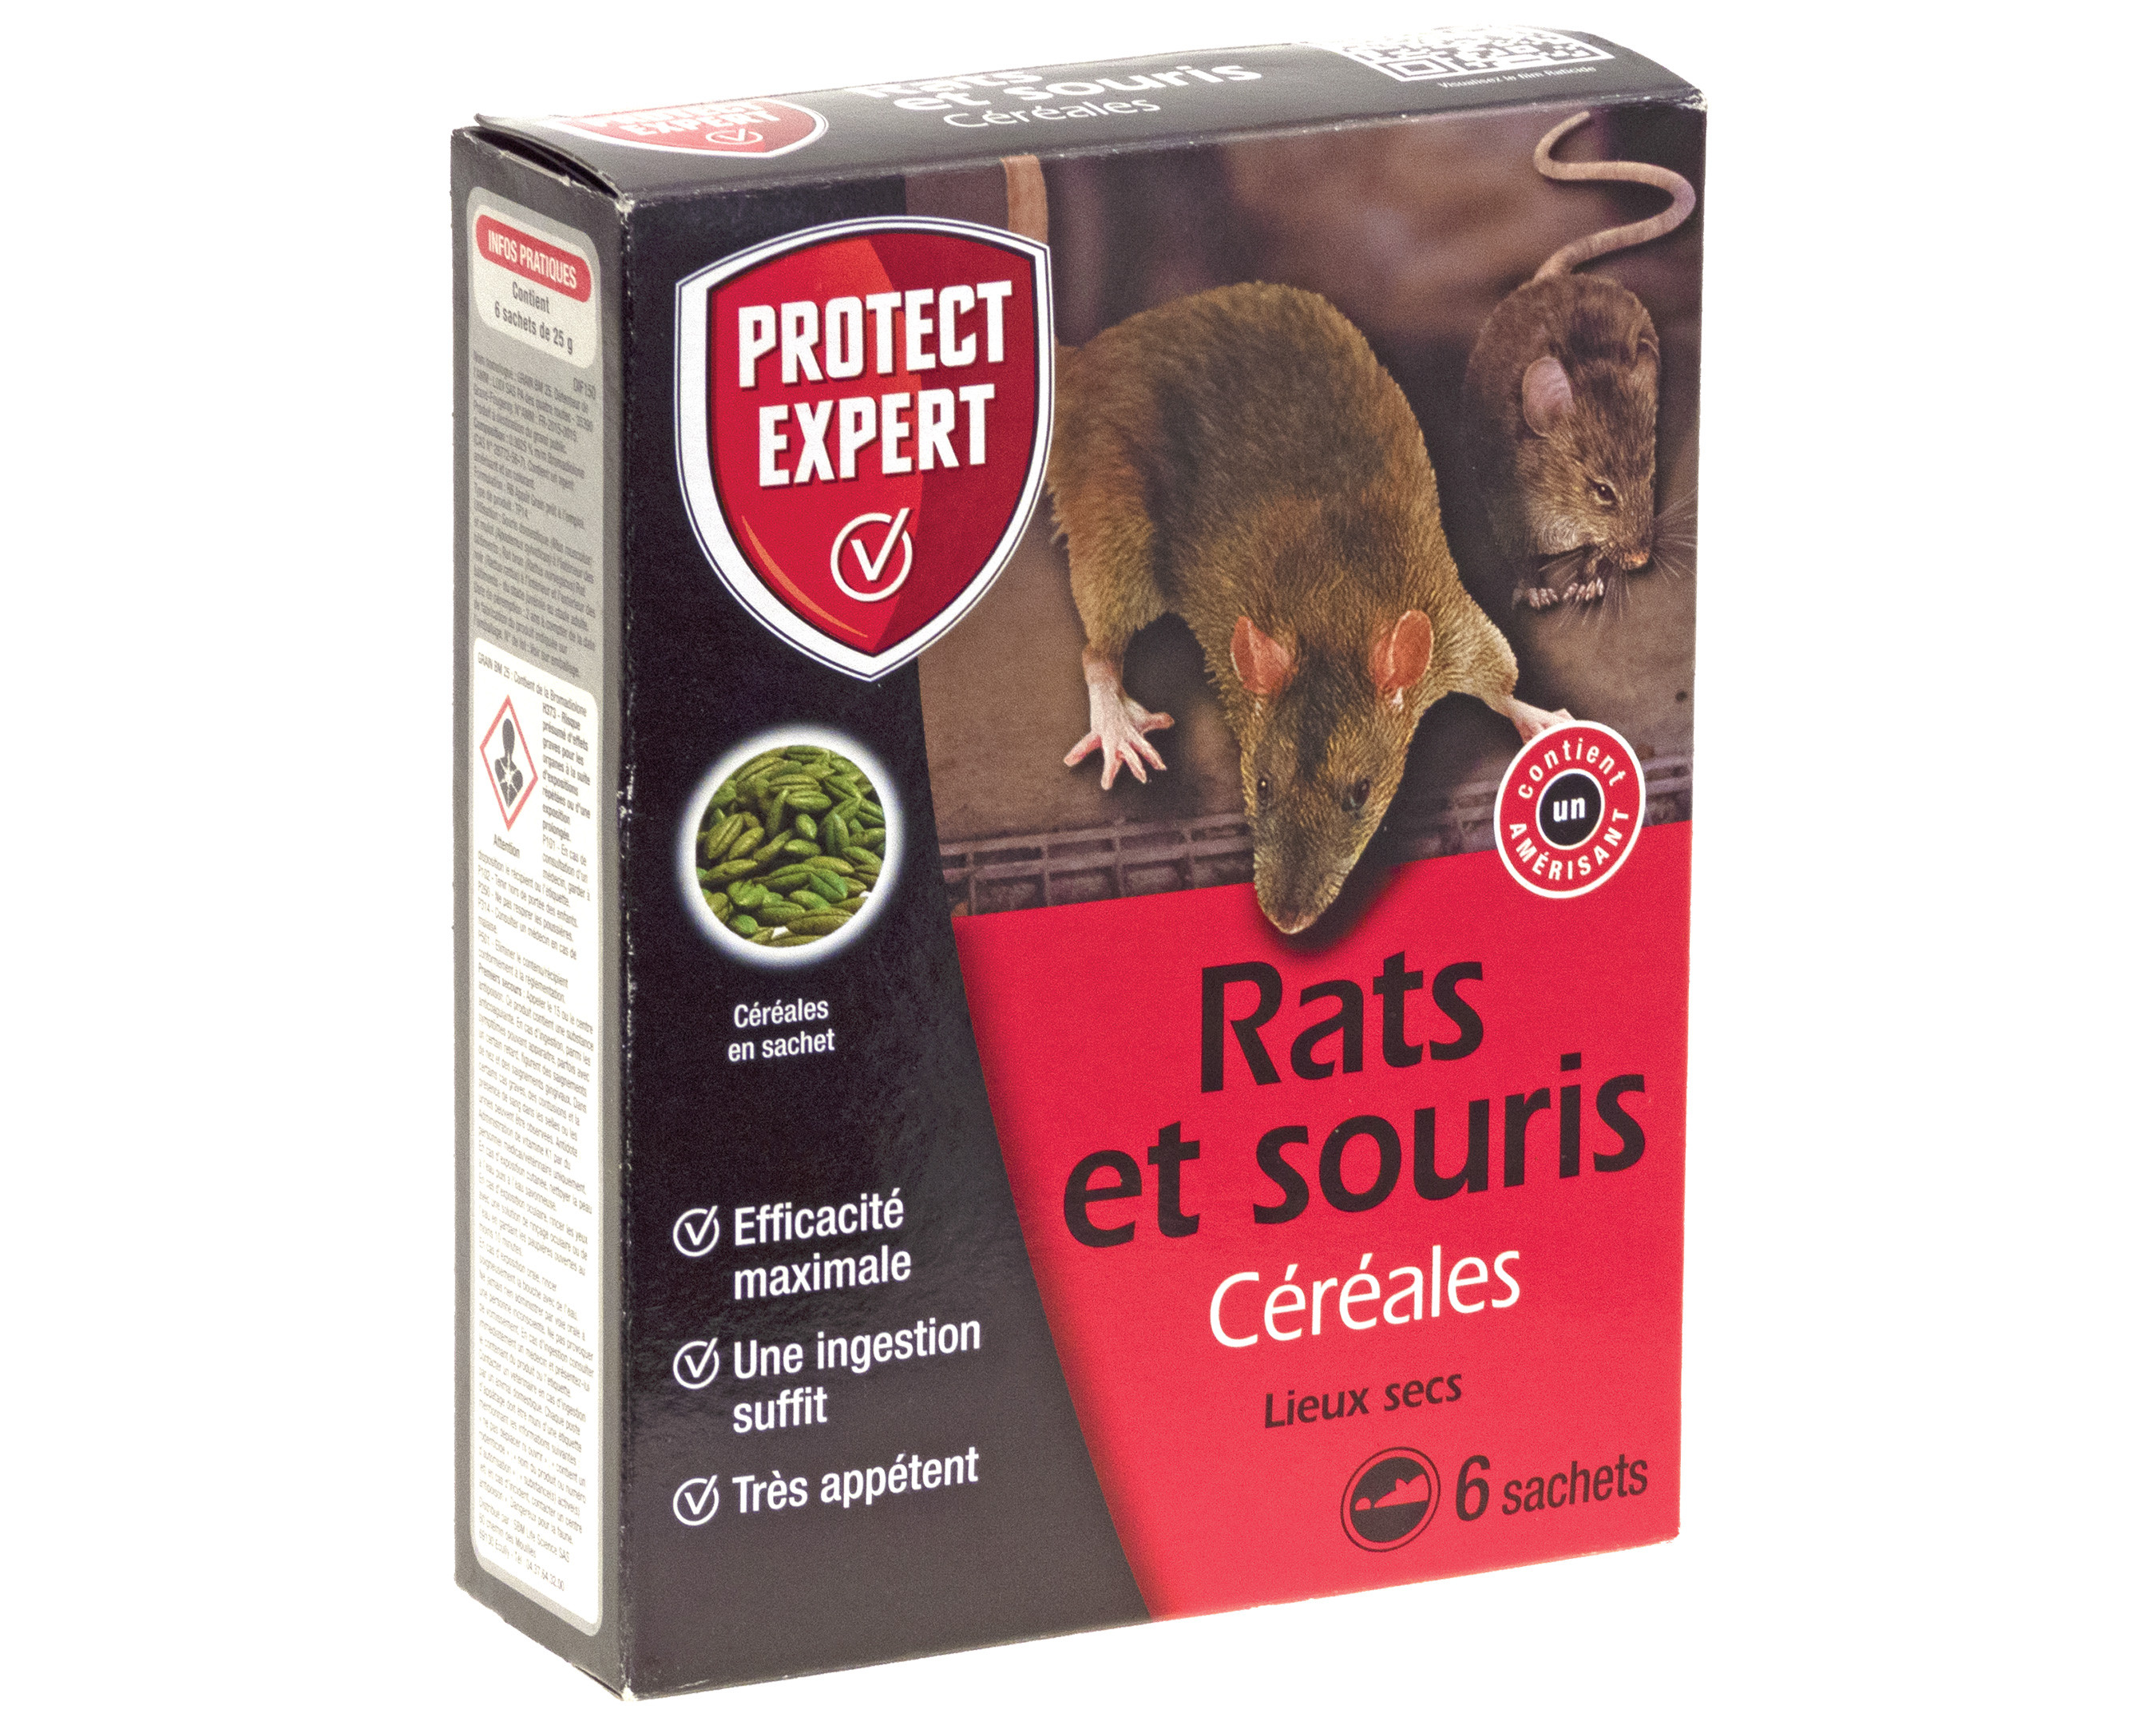 Raticide Souricide Protect Expert Rats et souris Céréales grains 6 sachets